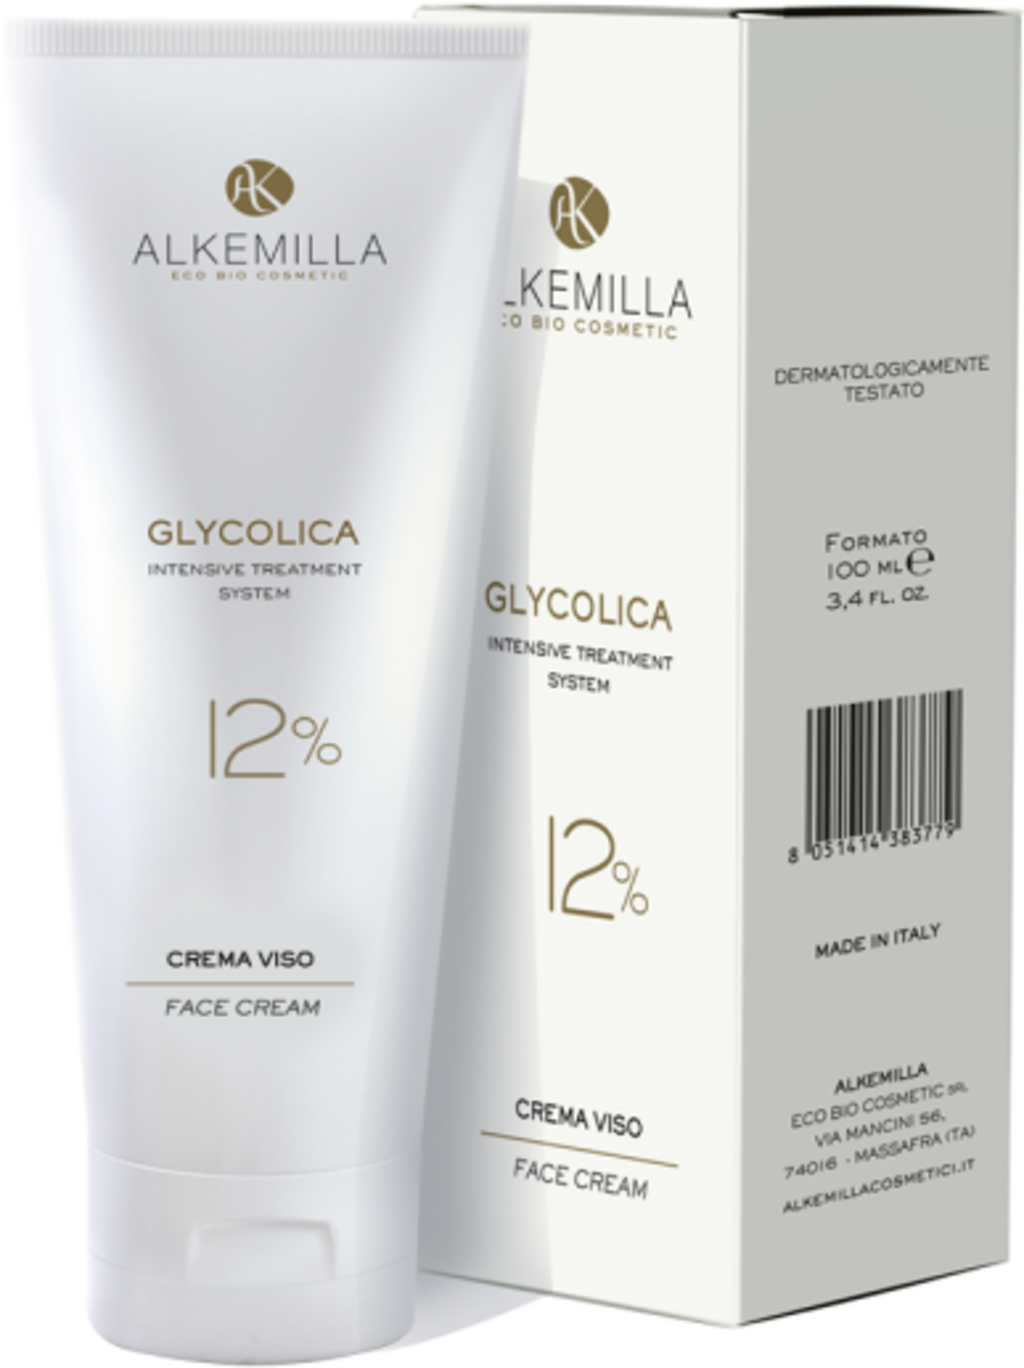 Alkemilla Eco Bio Cosmetic Glycolica Gesichtscreme 12% - 100 ml